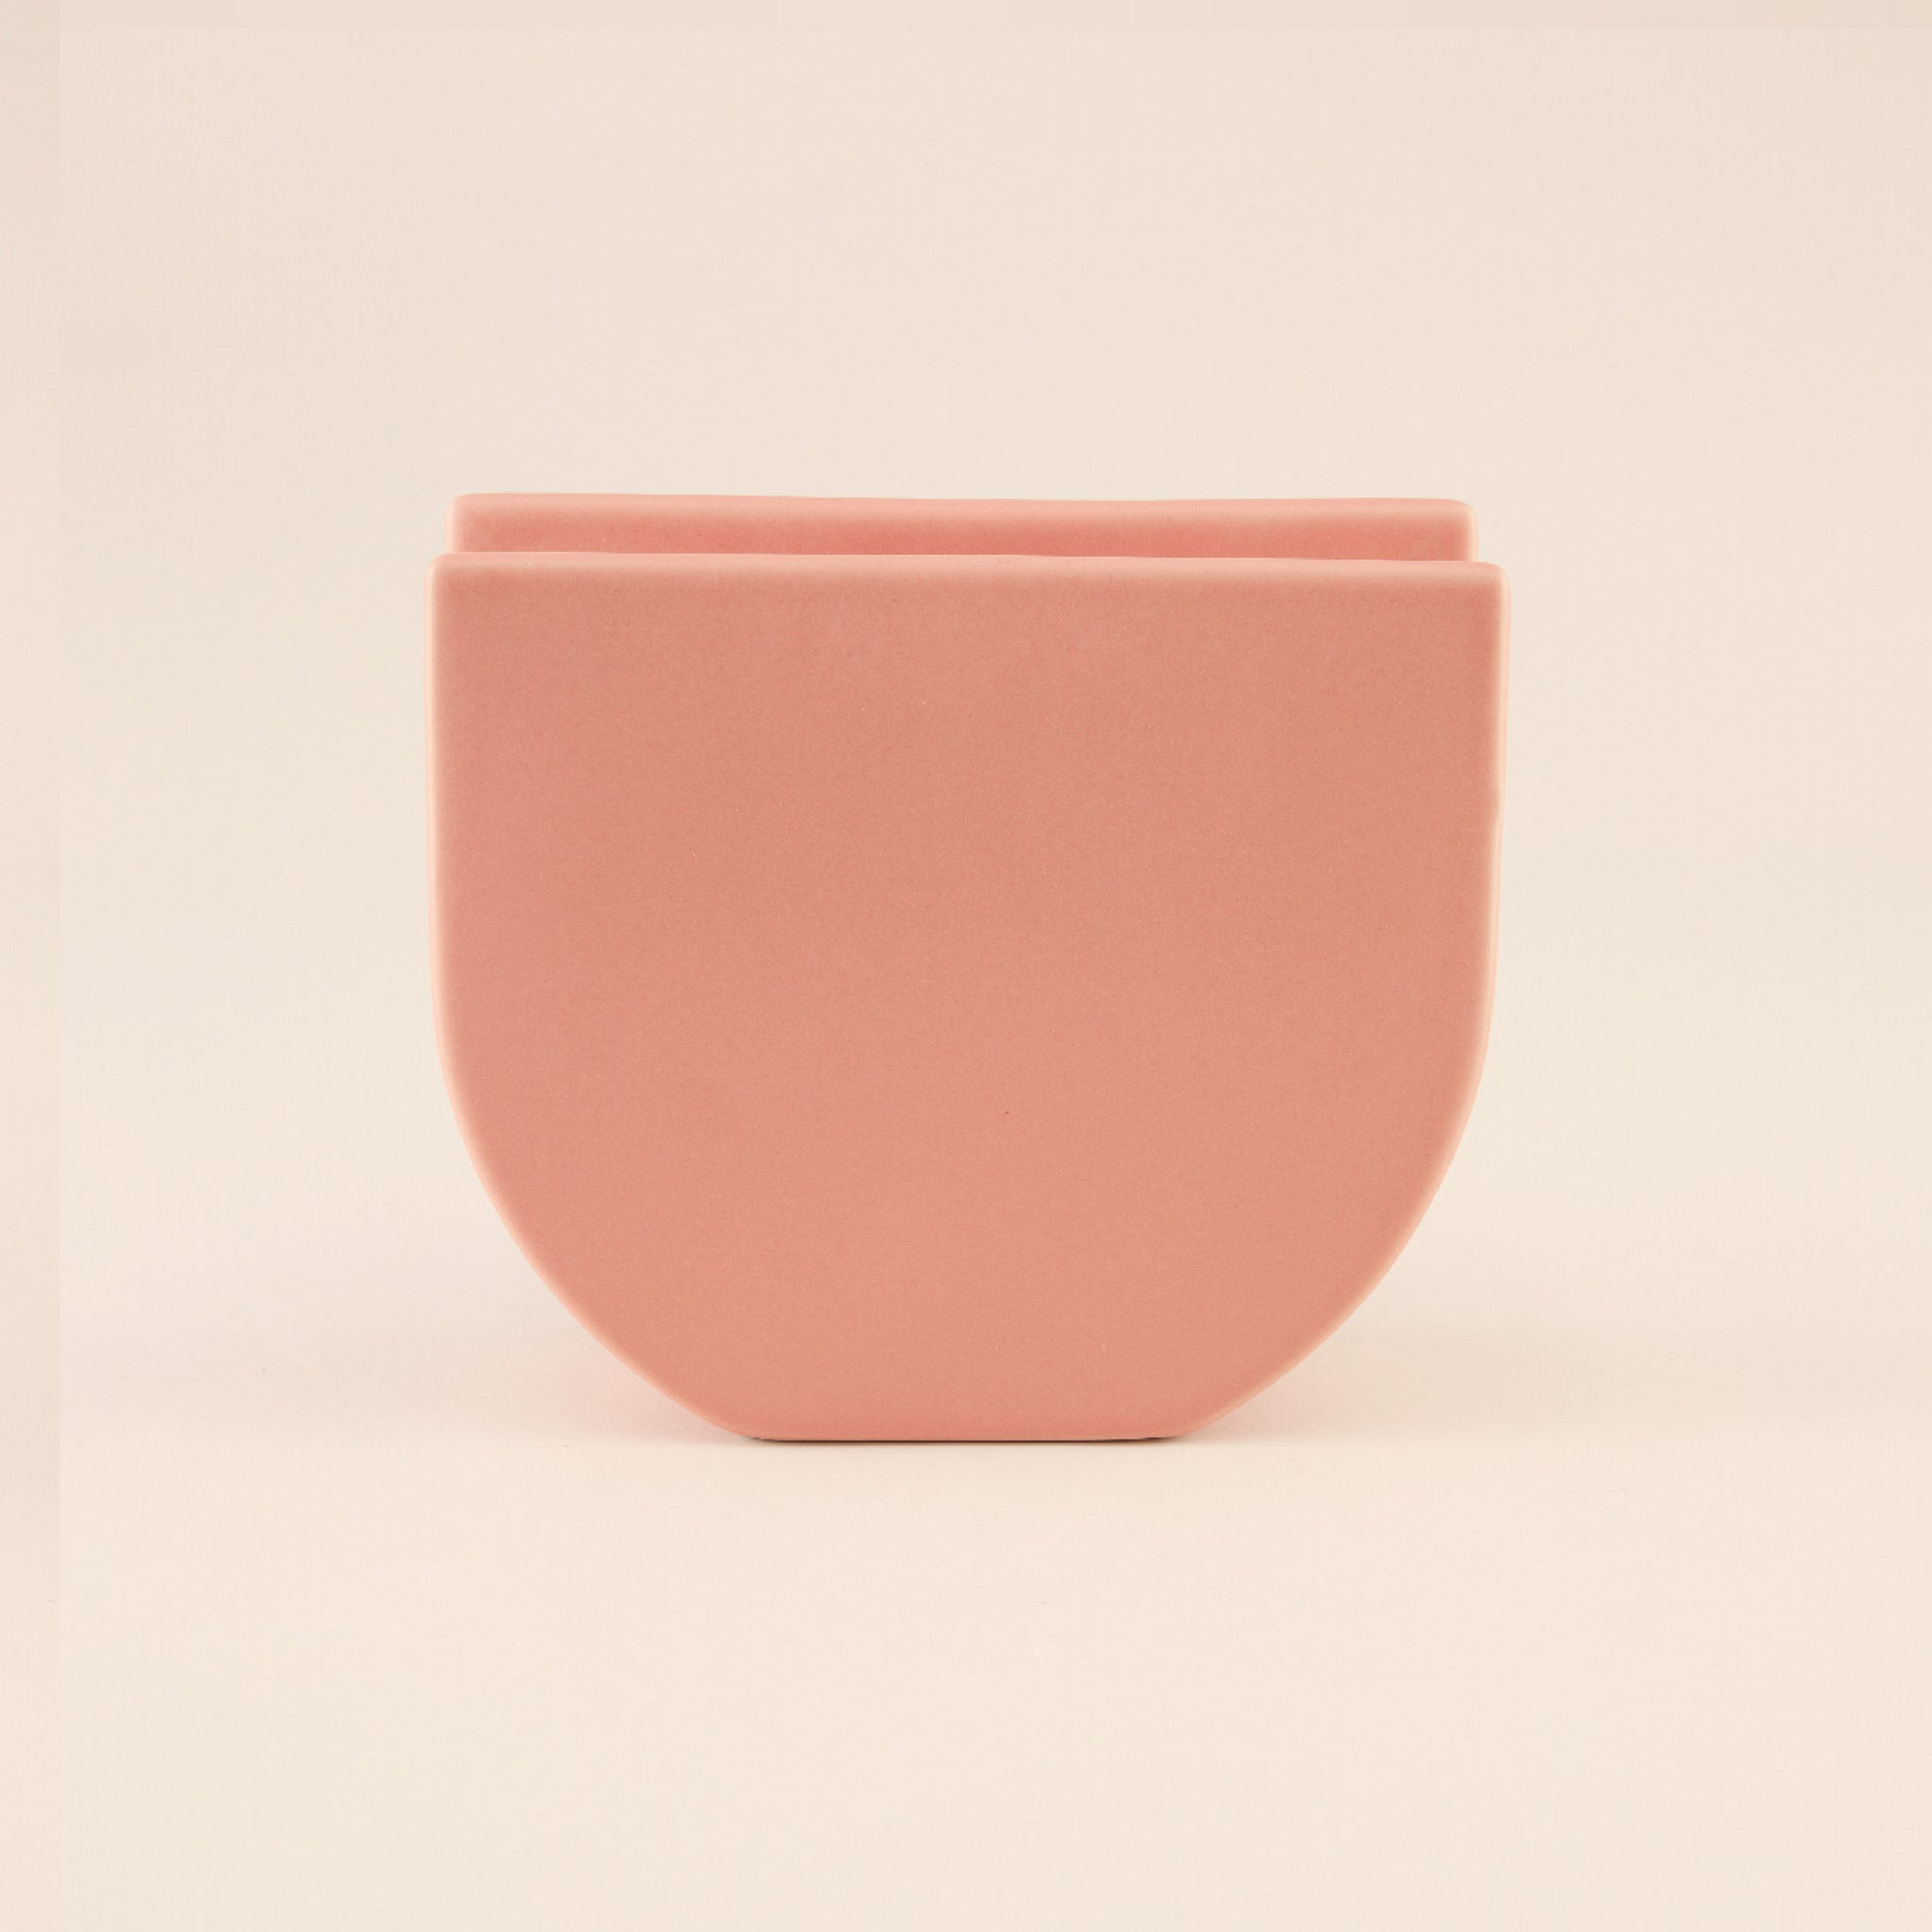 U-Shaped Ceramic Vase | แจกัน เซรามิก